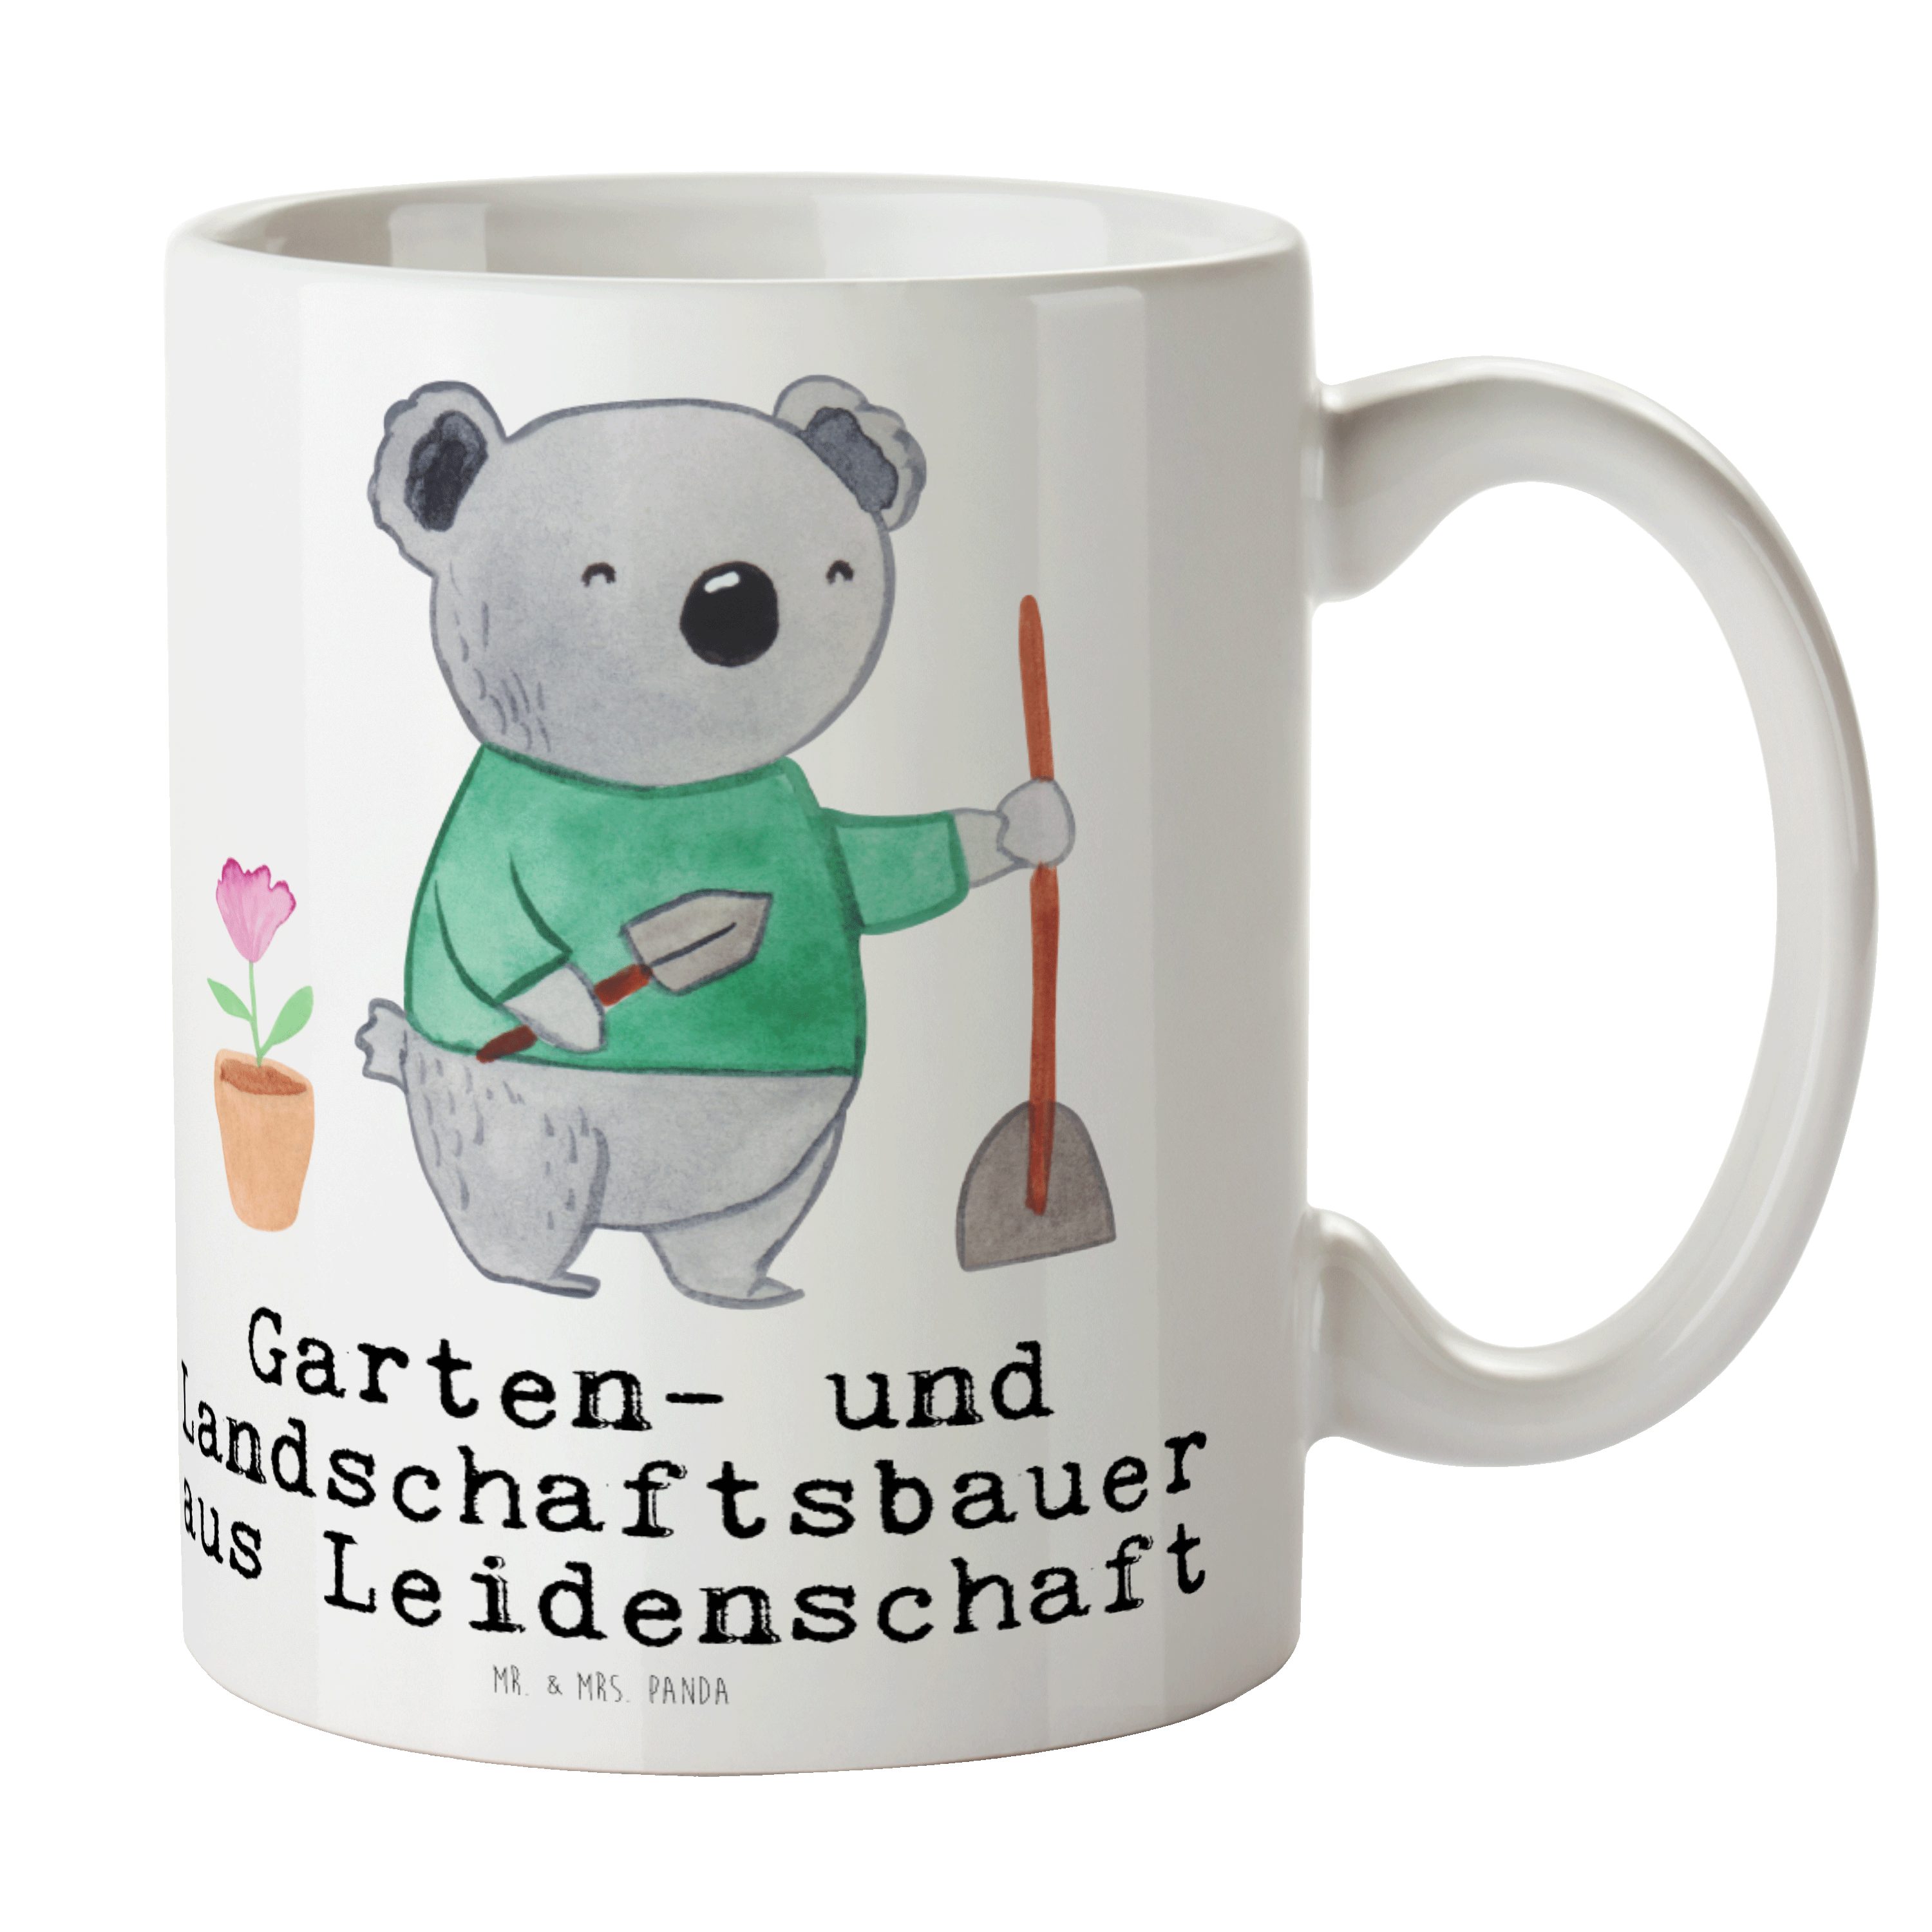 Mr. & Mrs. Büro, Leidenschaft - Garten- und Weiß - aus Landschaftsbauer Tasse Keramik Geschenk, Panda